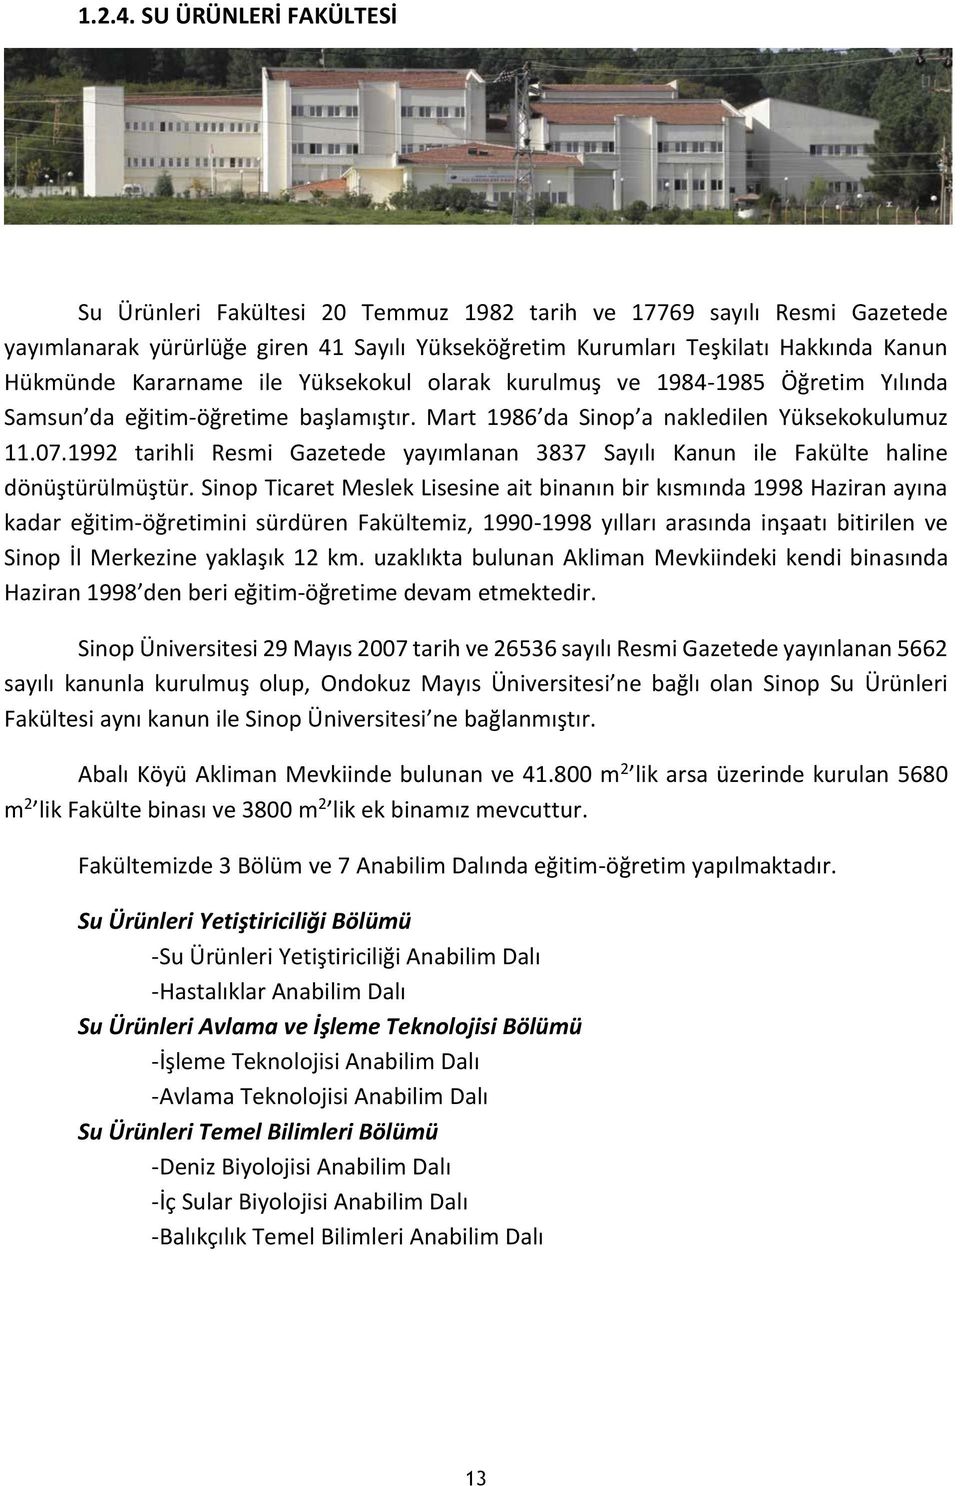 Kararname ile Yüksekokul olarak kurulmuş ve 1984-1985 Öğretim Yılında Samsun da eğitim-öğretime başlamıştır. Mart 1986 da Sinop a nakledilen Yüksekokulumuz 11.07.